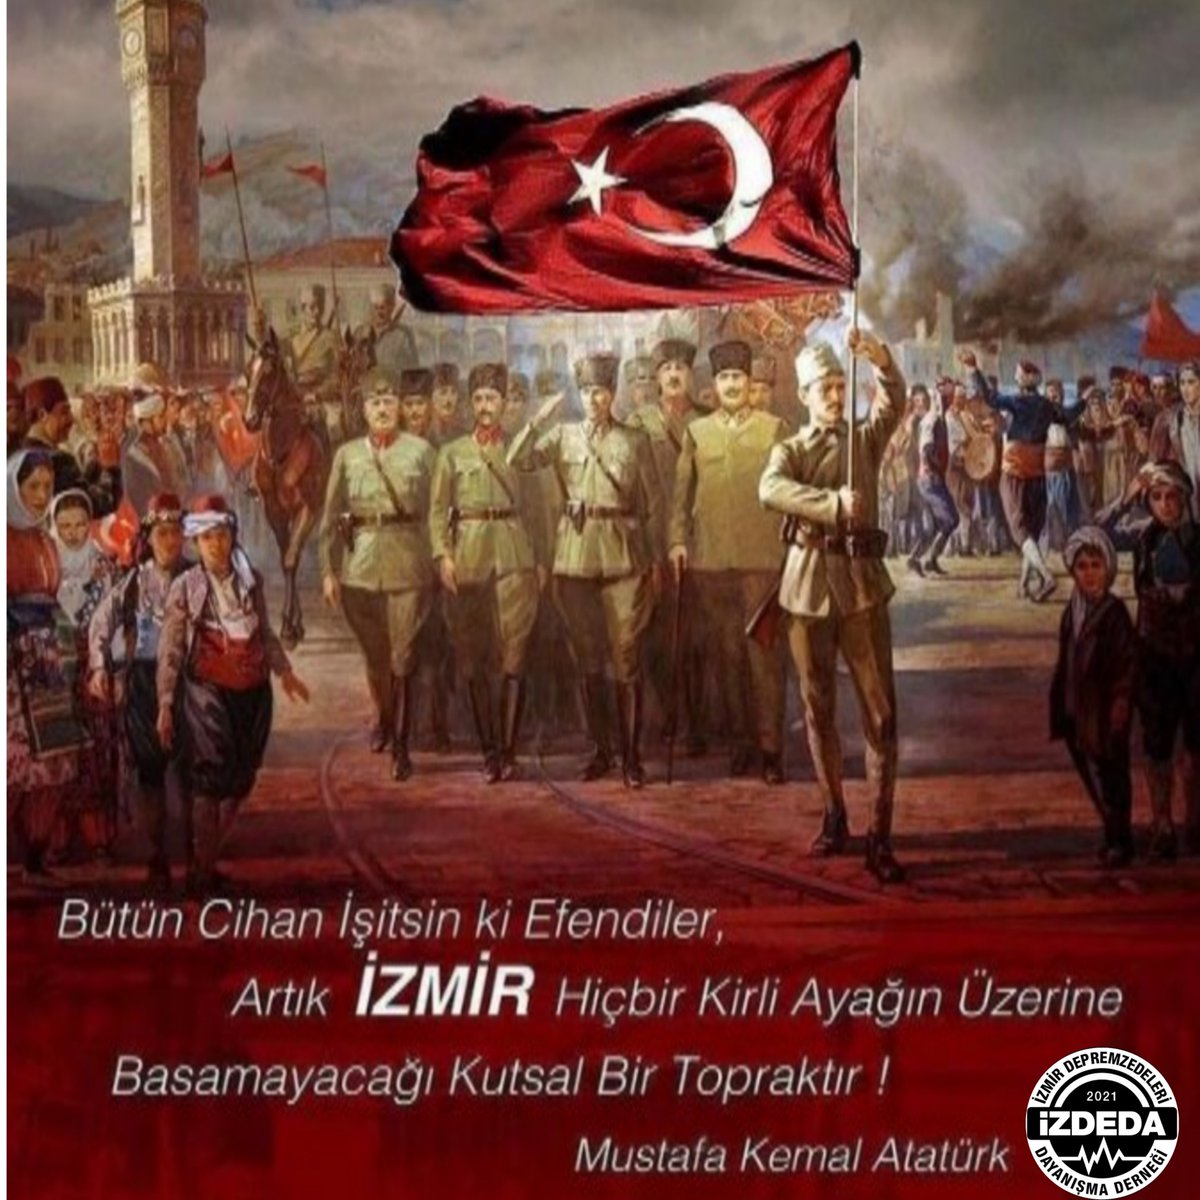 İzmir'in Kurtuluşunun 100.Yılında Başkomutan Mustafa Kemal Atatürk ve Kurtuluş Savaşımızın aziz kahramanlarını saygı ve minnetle anıyoruz 9 Eylül İzmir'imizin kurtuluşu kutlu olsun #İzmireKulakVerin #9eylül